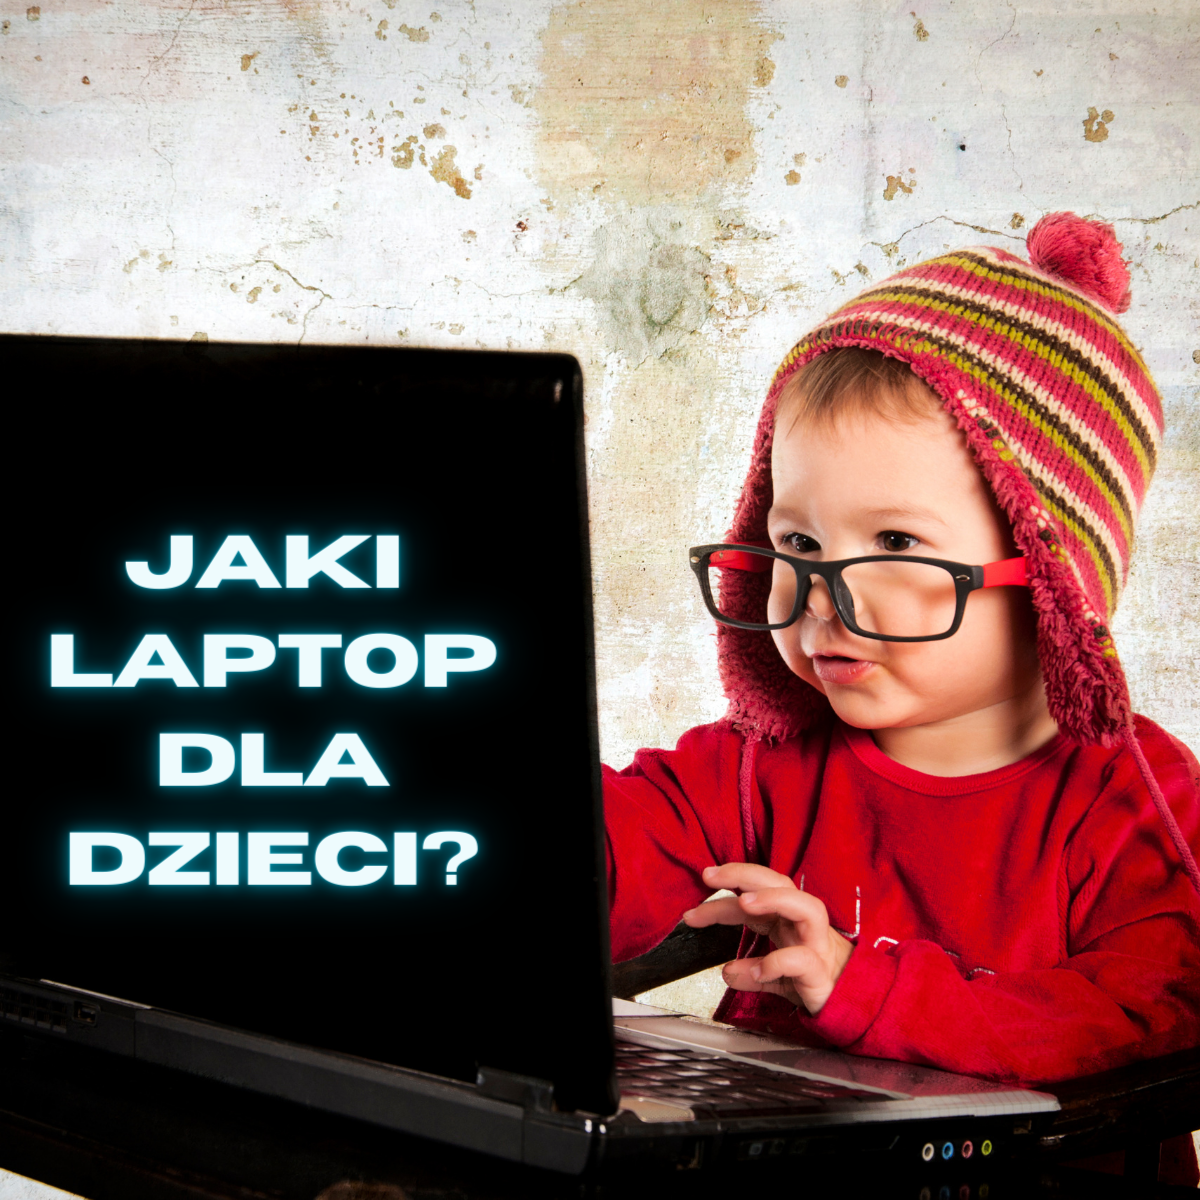 Jaki laptop wybrać dla dziecka? - przegląd propozycji od ag-notebooki